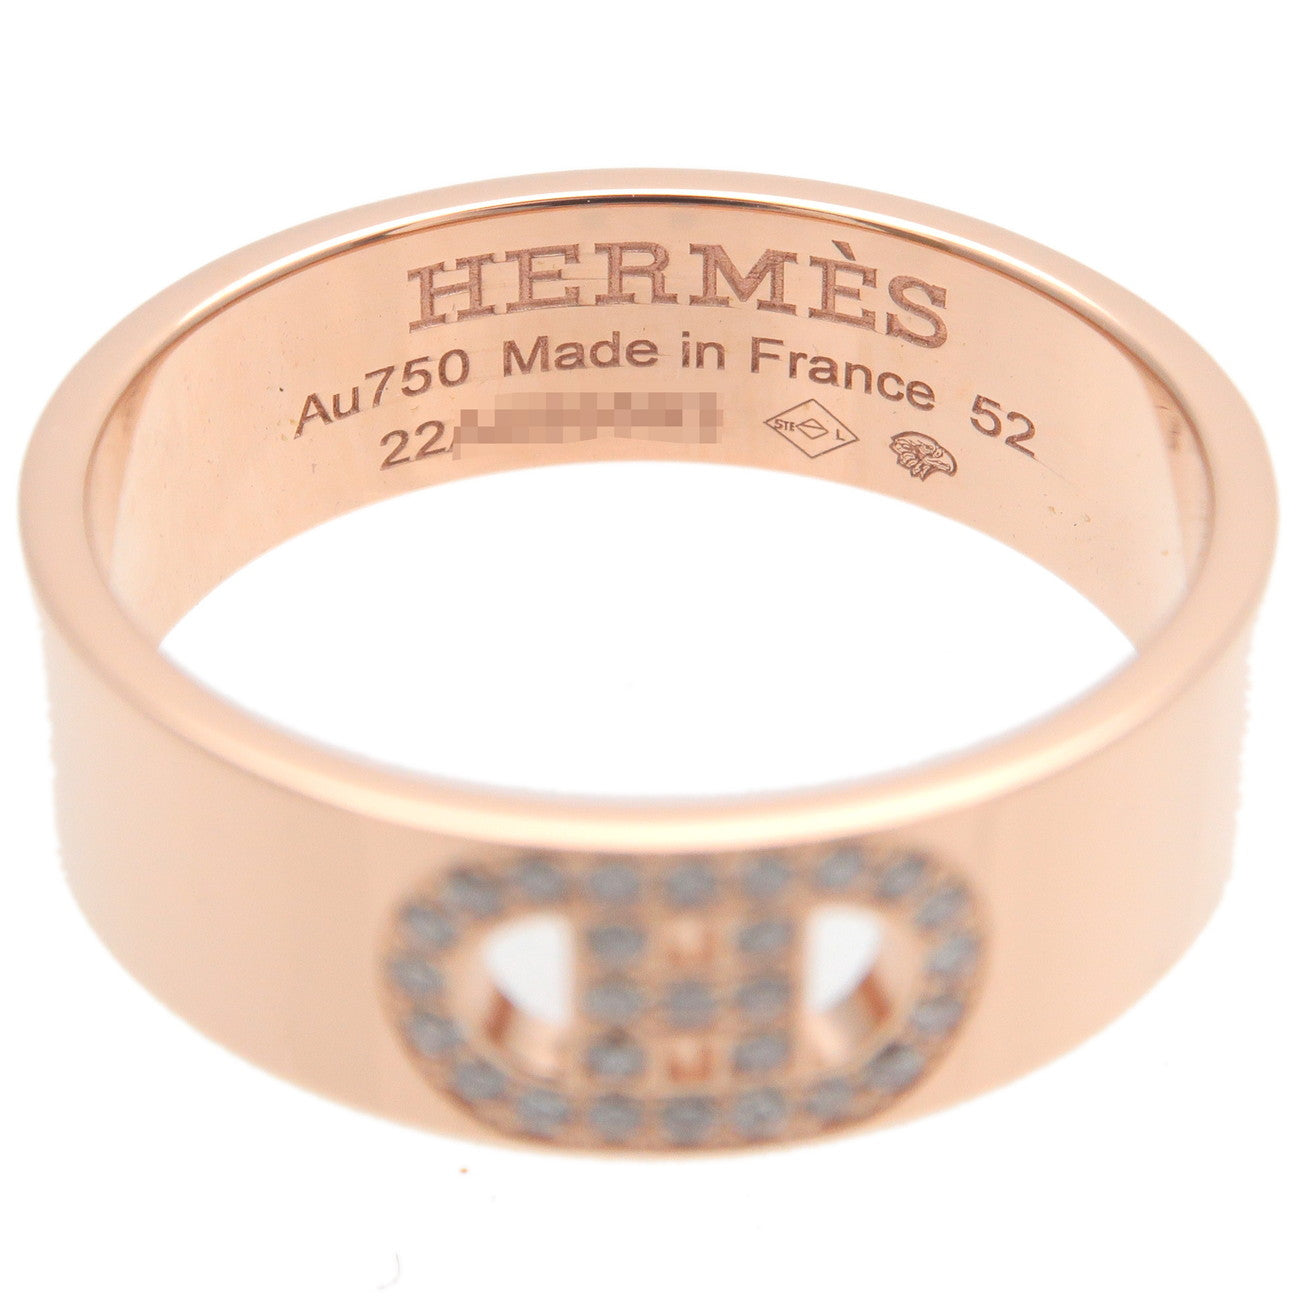 Hermes H Dunkle Diamond Ring PM K18PG Rose Gold #52 US6-6.5